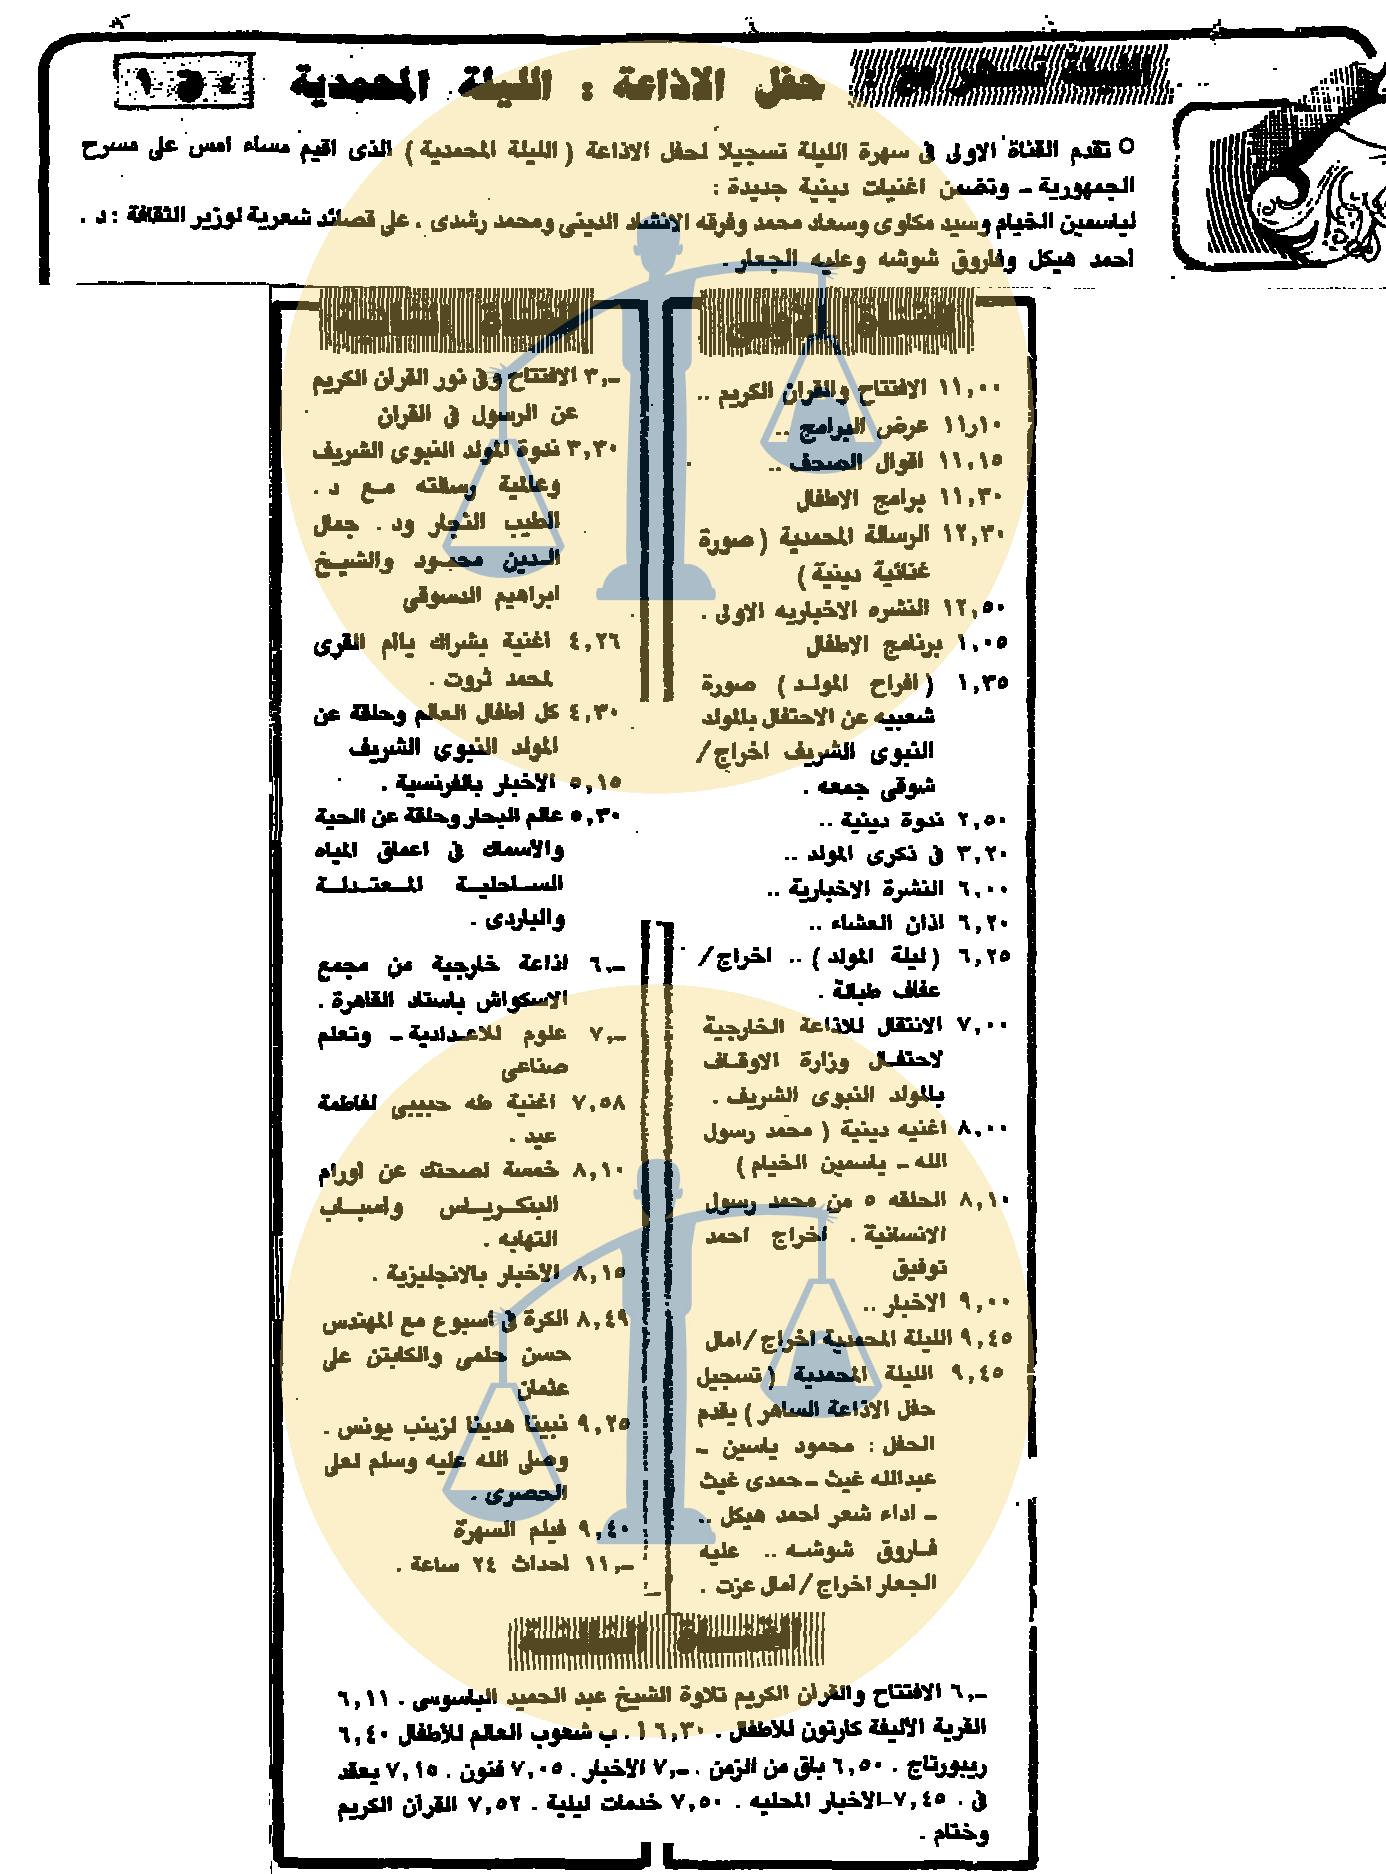 فقرات القناة الأولى - الأهرام يوم 25 نوفمبر 1985 م